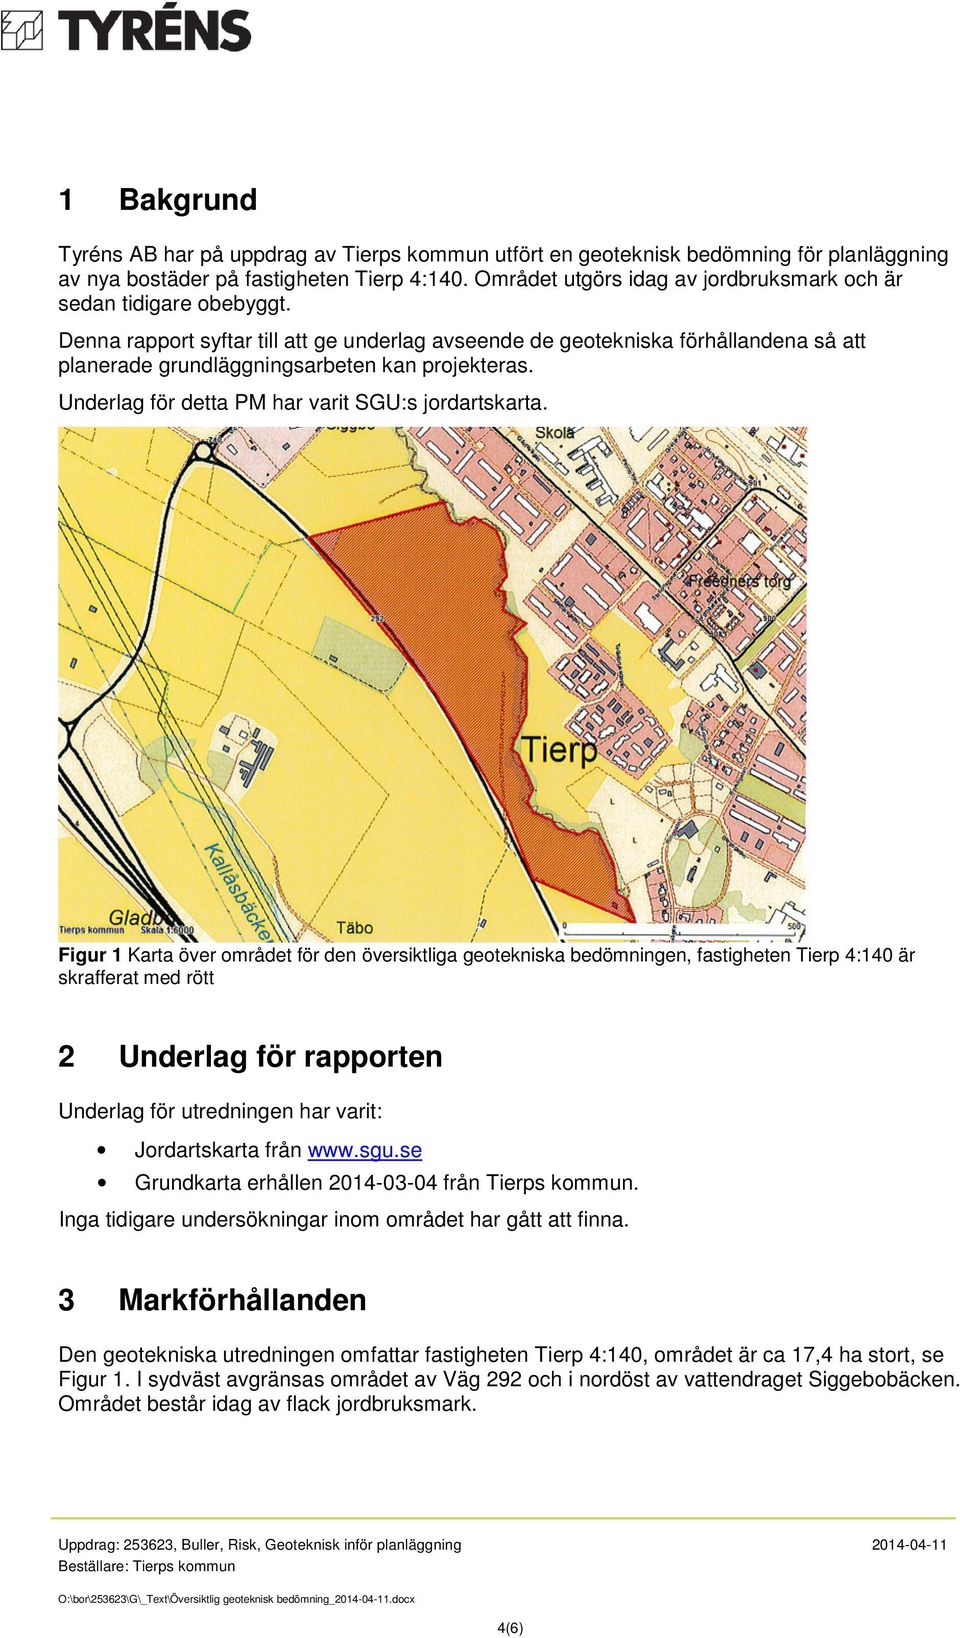 Denna rapport syftar till att ge underlag avseende de geotekniska förhållandena så att planerade grundläggningsarbeten kan projekteras. Underlag för detta PM har varit SGU:s jordartskarta.